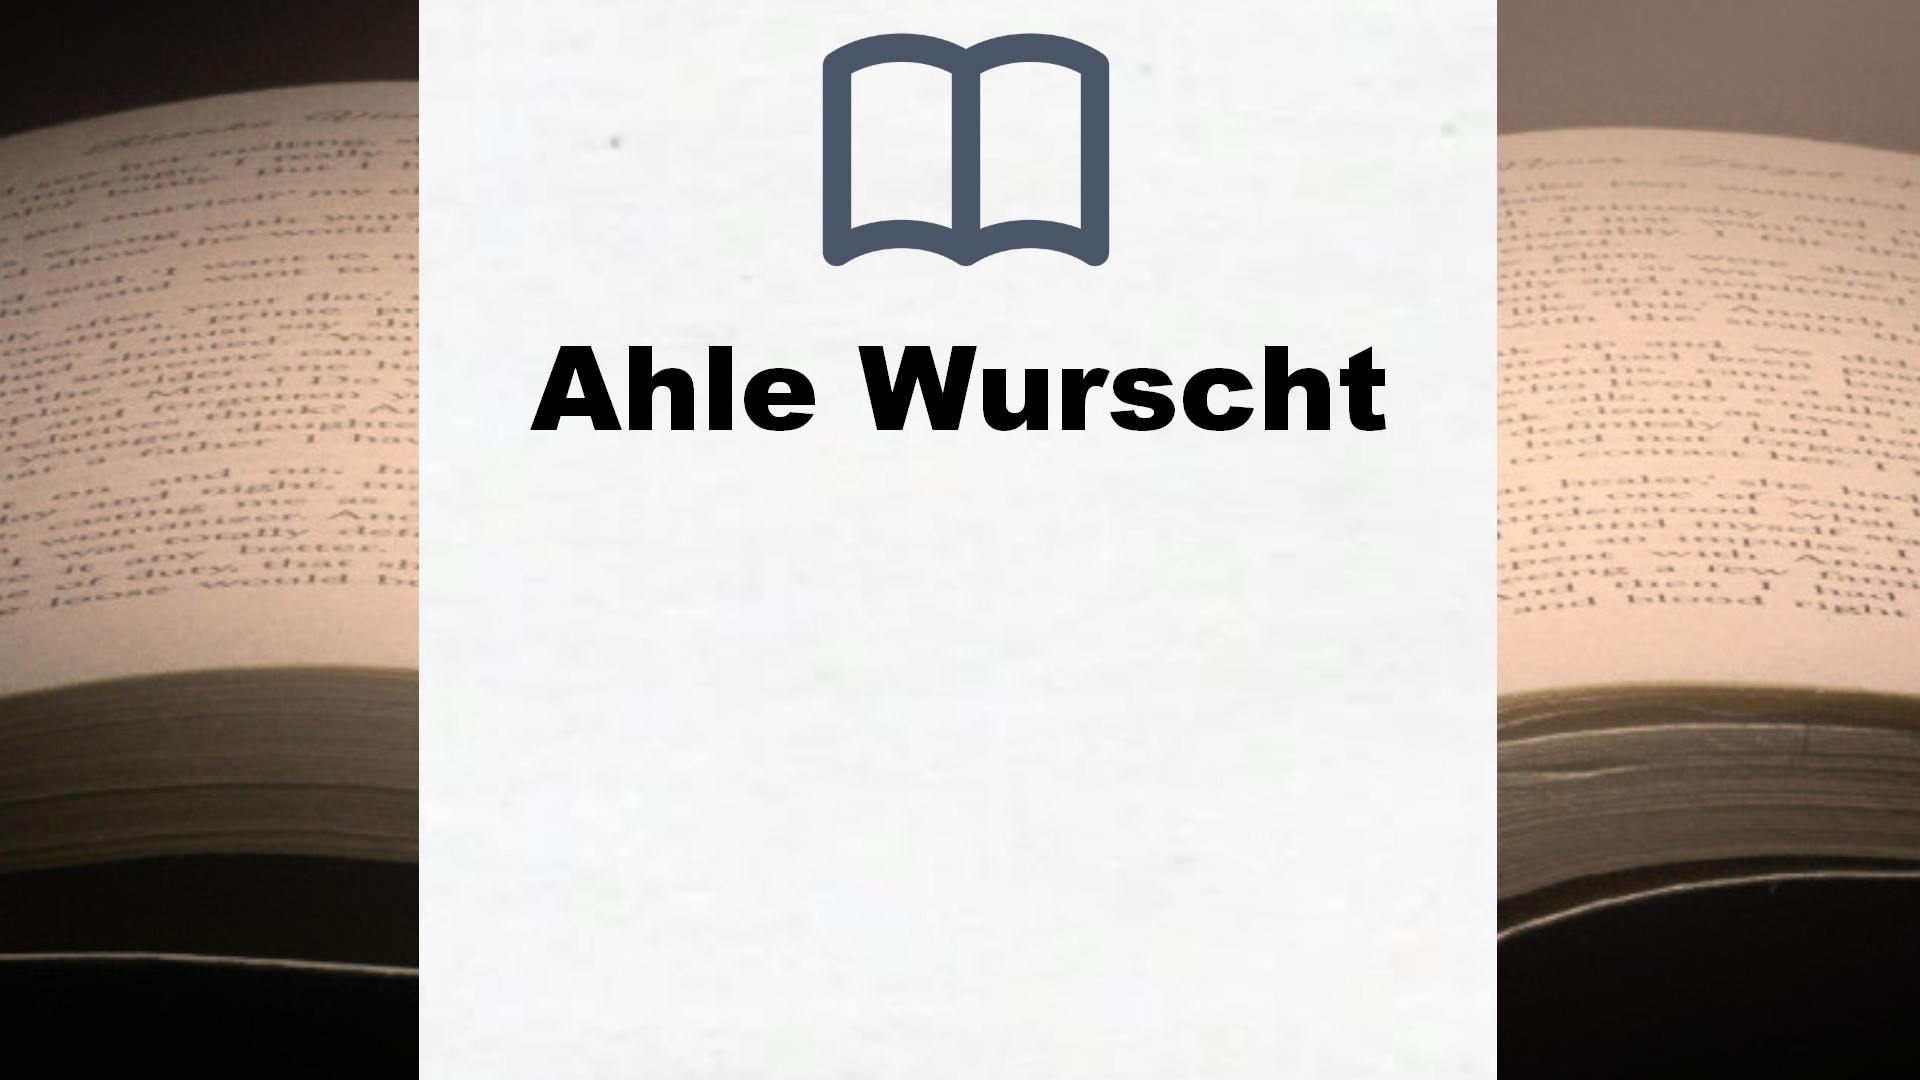 Bücher über Ahle Wurscht